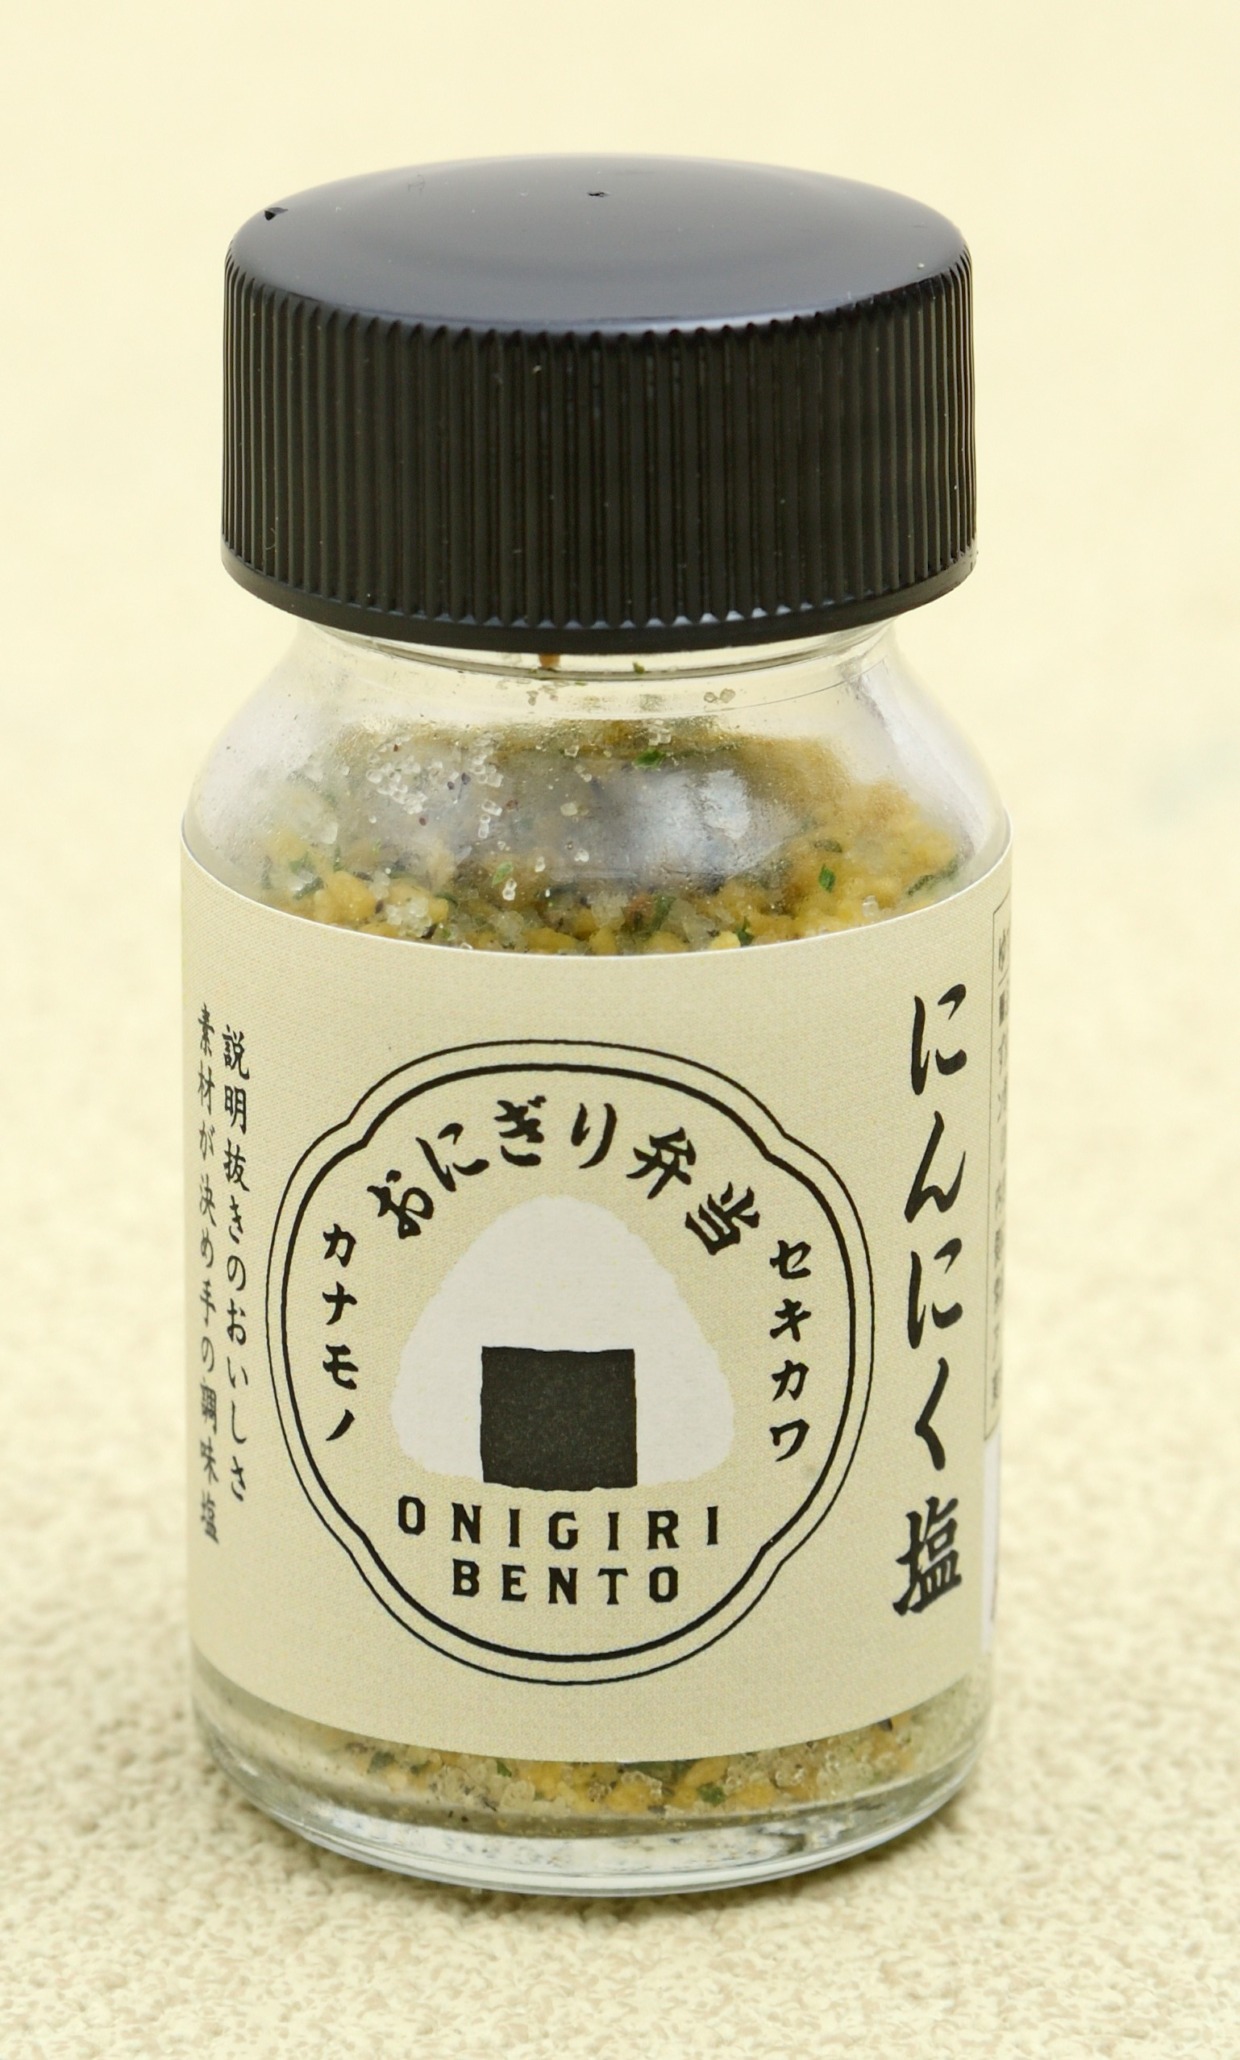 関川産業 おにぎり塩【にんにく塩】 - シーズコア